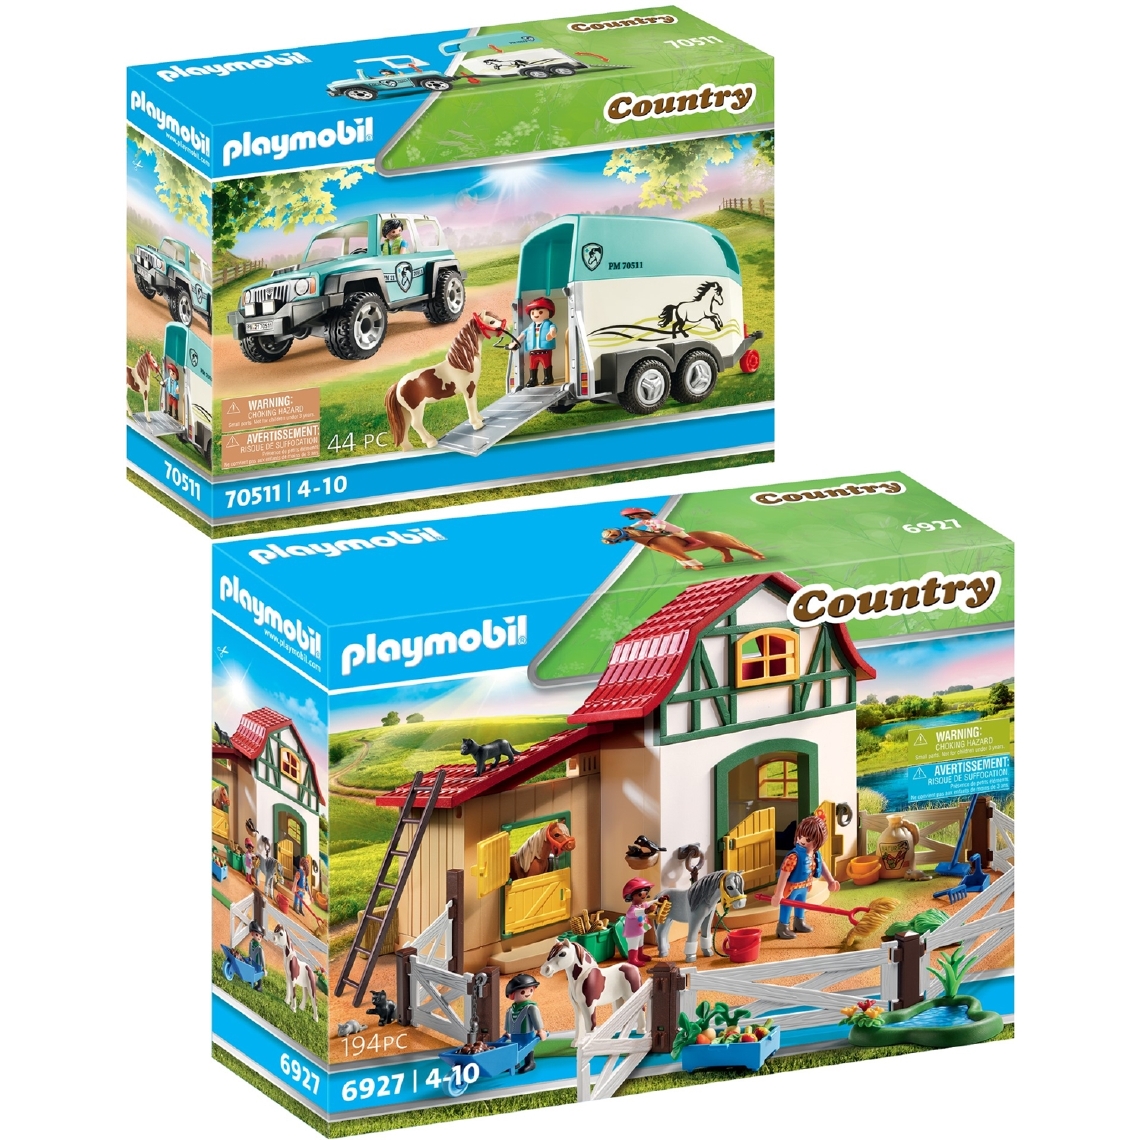 Playmobil - PLAYMOBIL 6927 70511 - Playmobil – Country – 6927+70511 - Playmobil